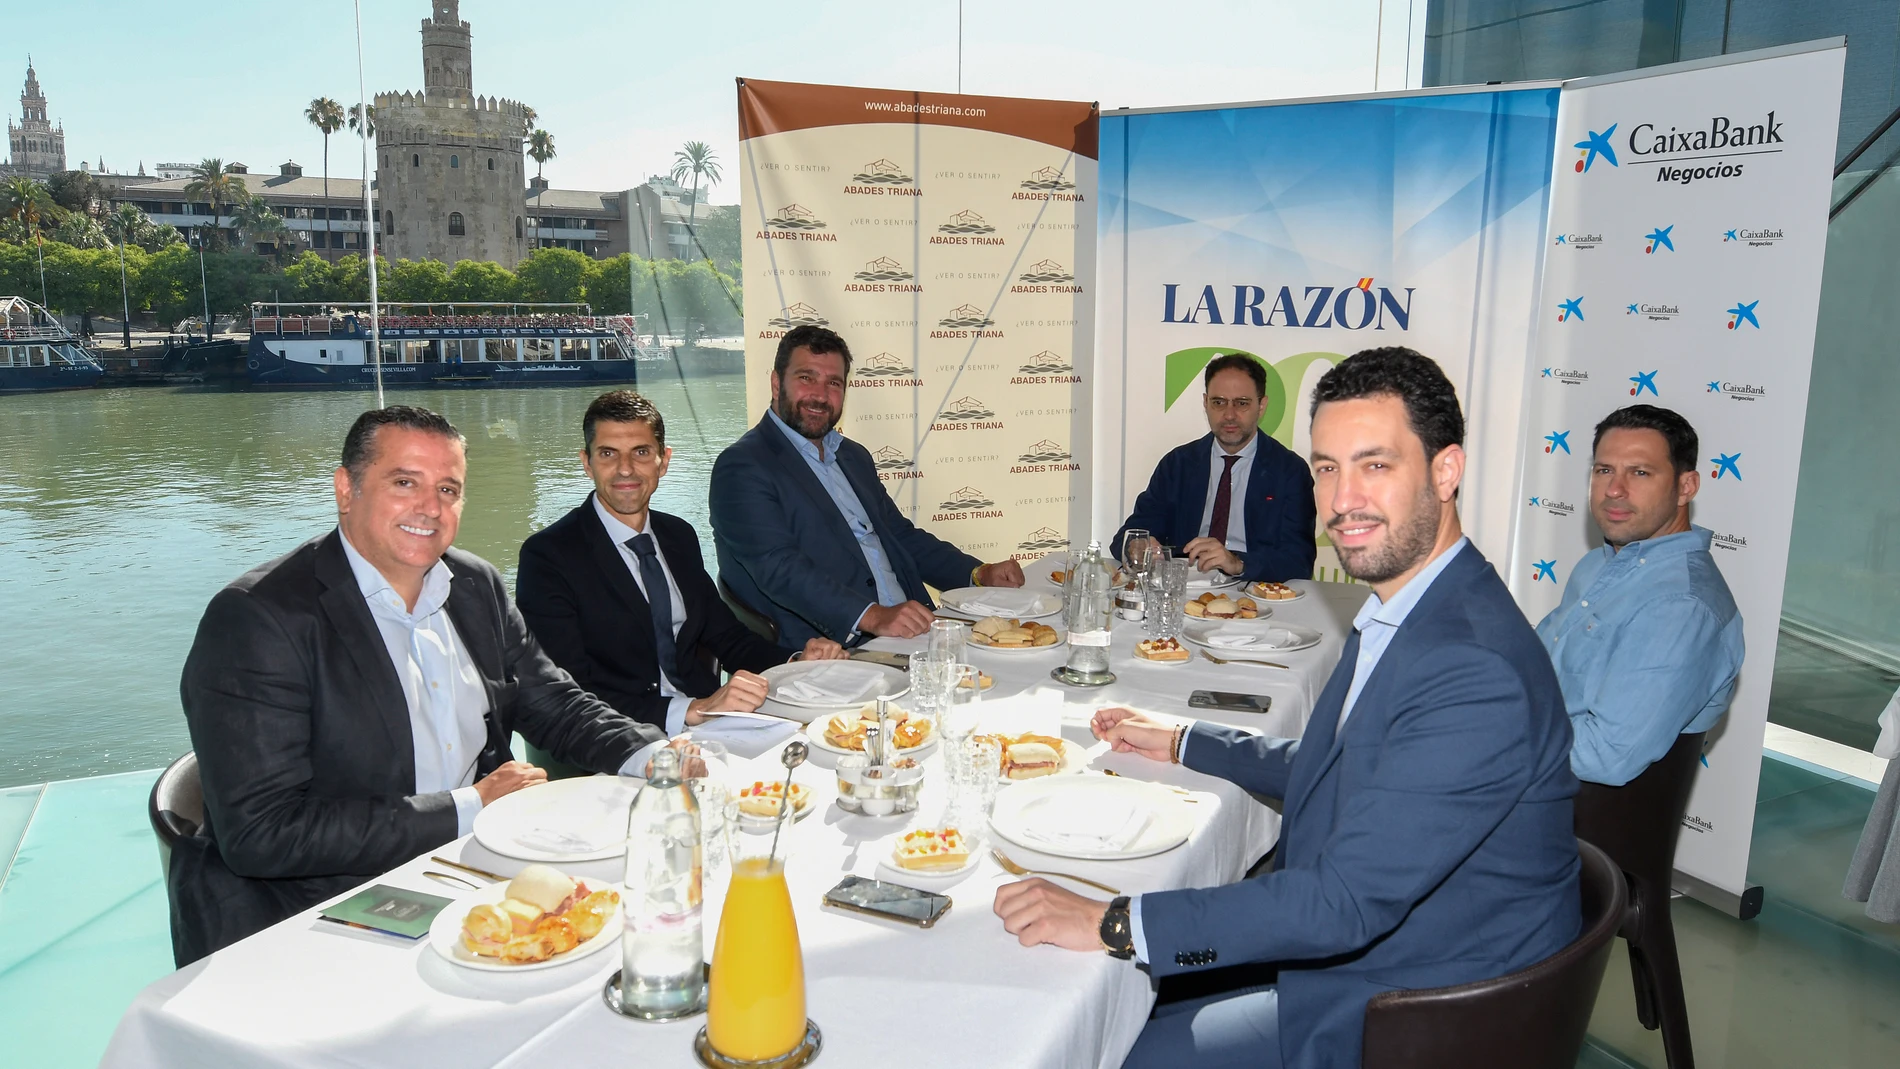 La mesa, moderada por el delegado de LA RAZÓN, José Lugo, tuvo lugar en el restaurante Abades Triana de Sevilla